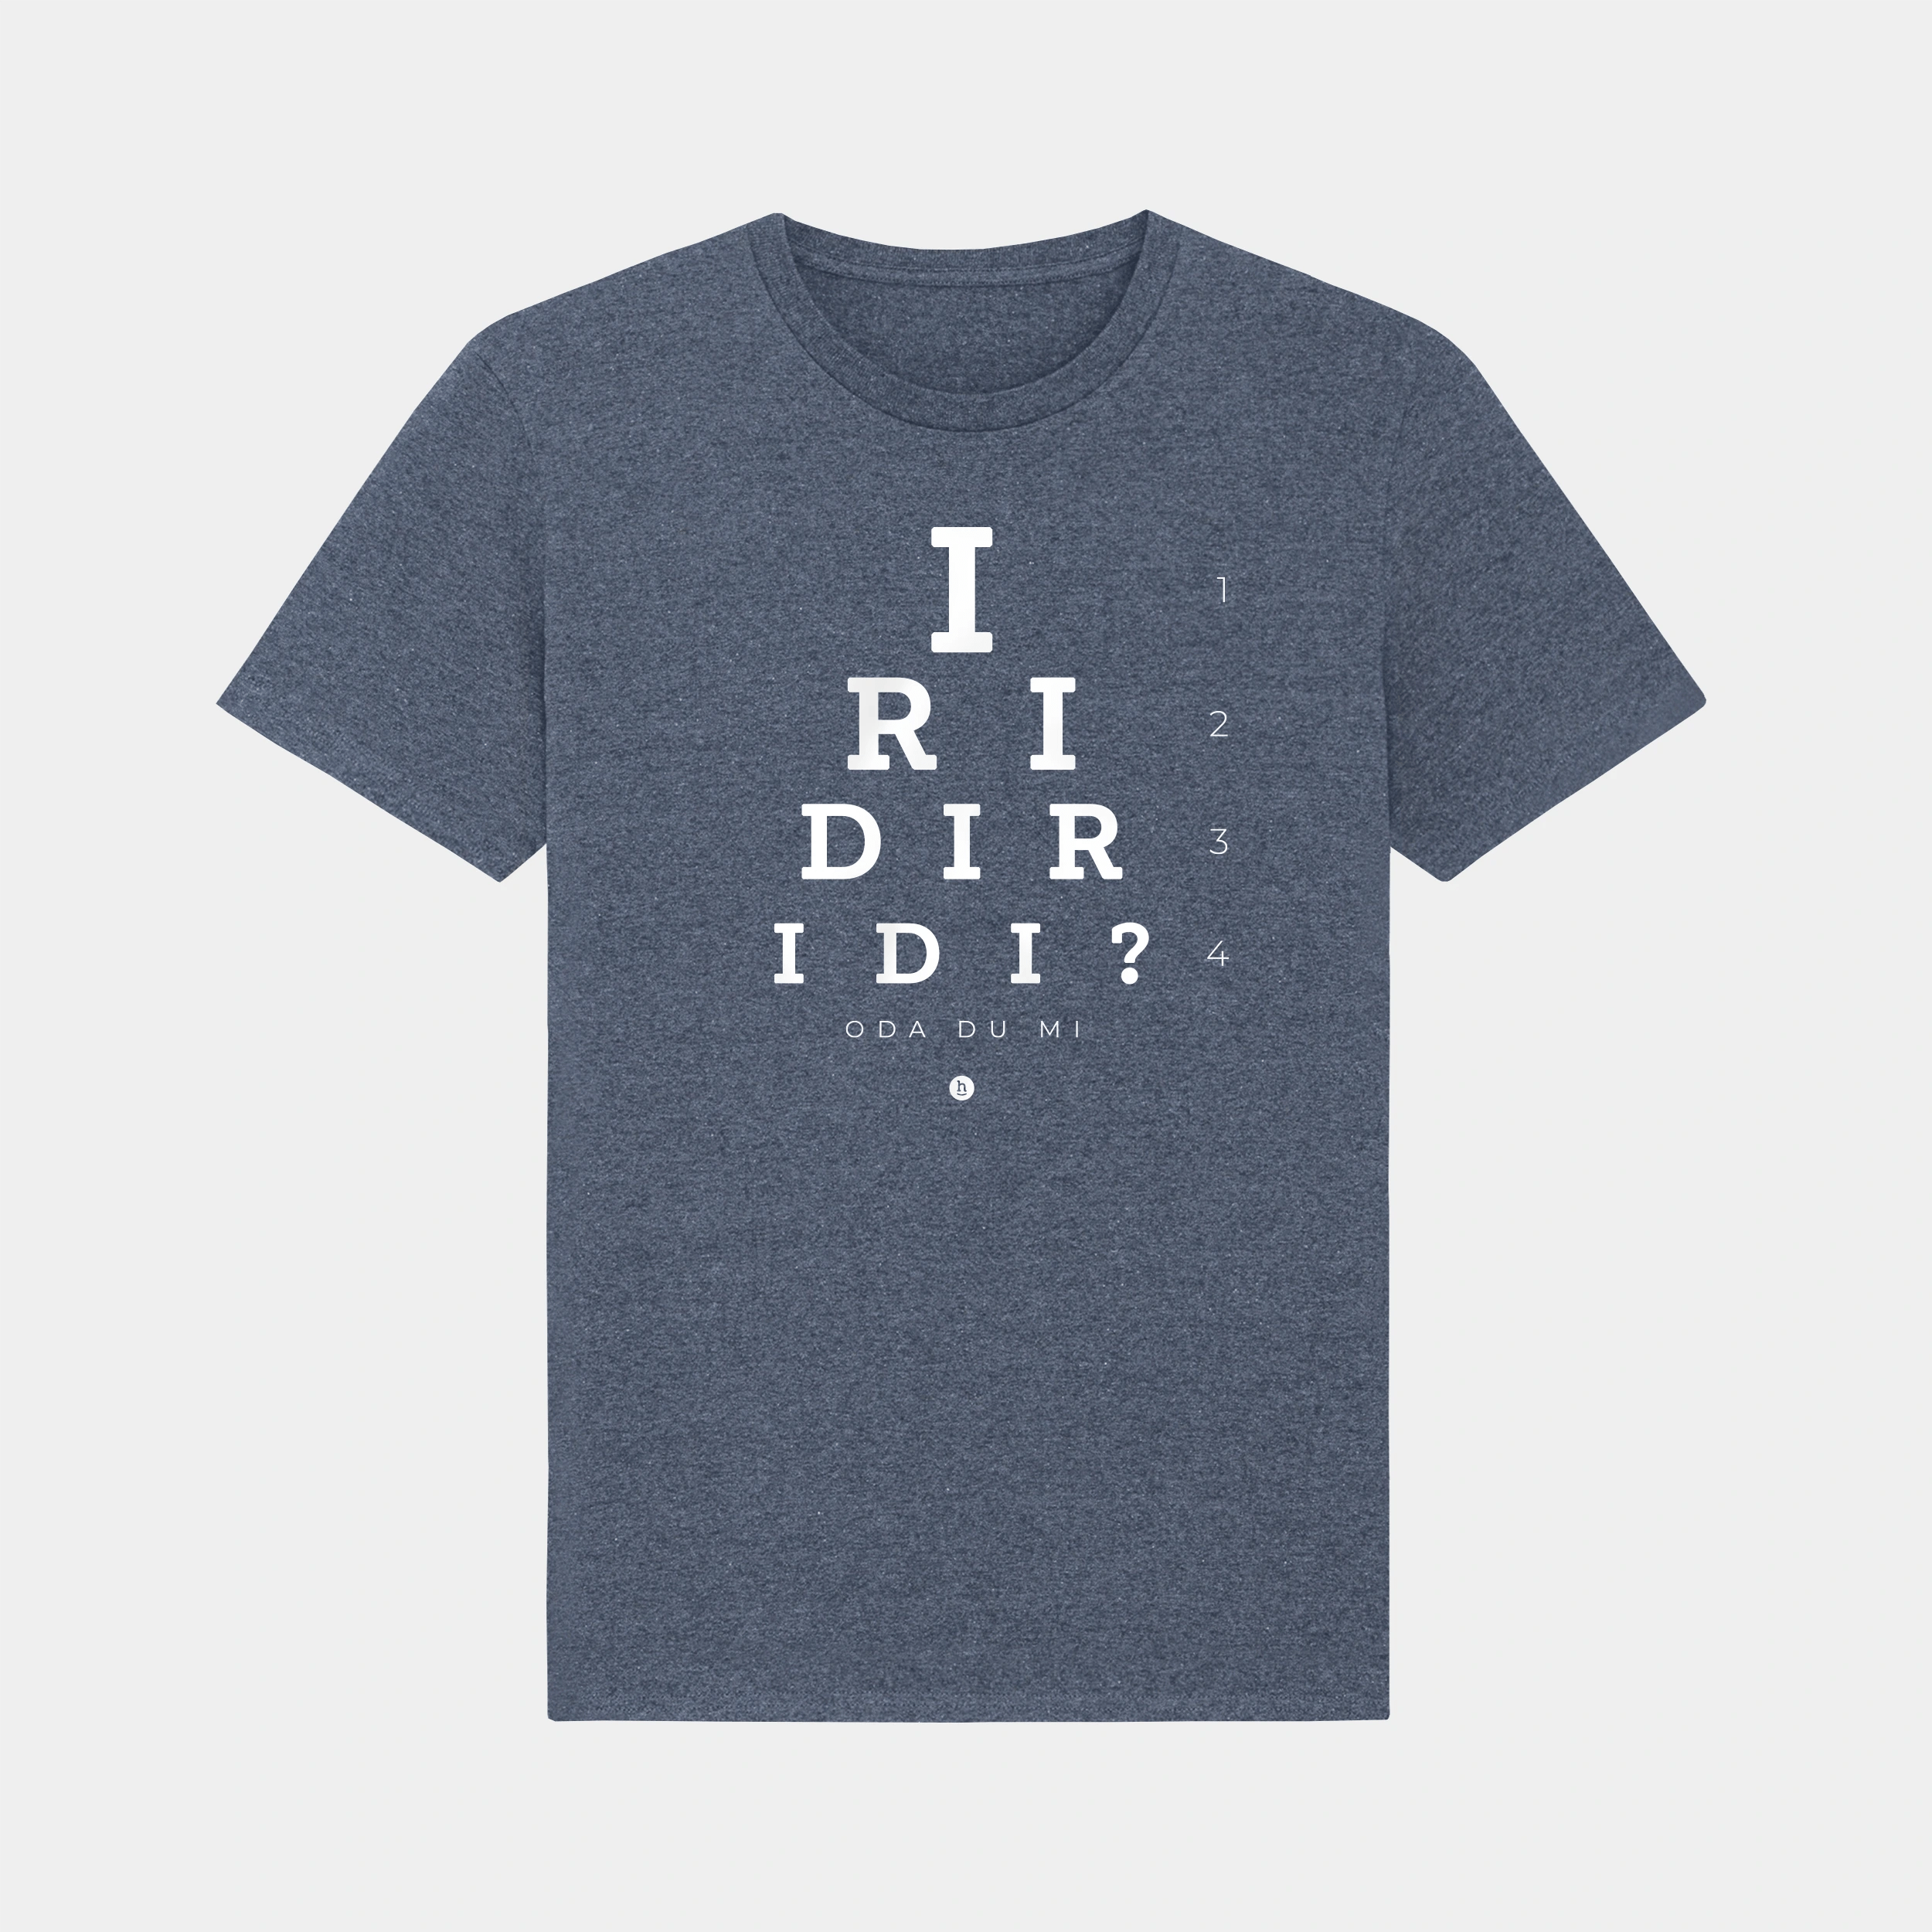 HEITER & LÄSSIG T-Shirt "Iridiridi" - aus nachhaltiger und fairer Produktion